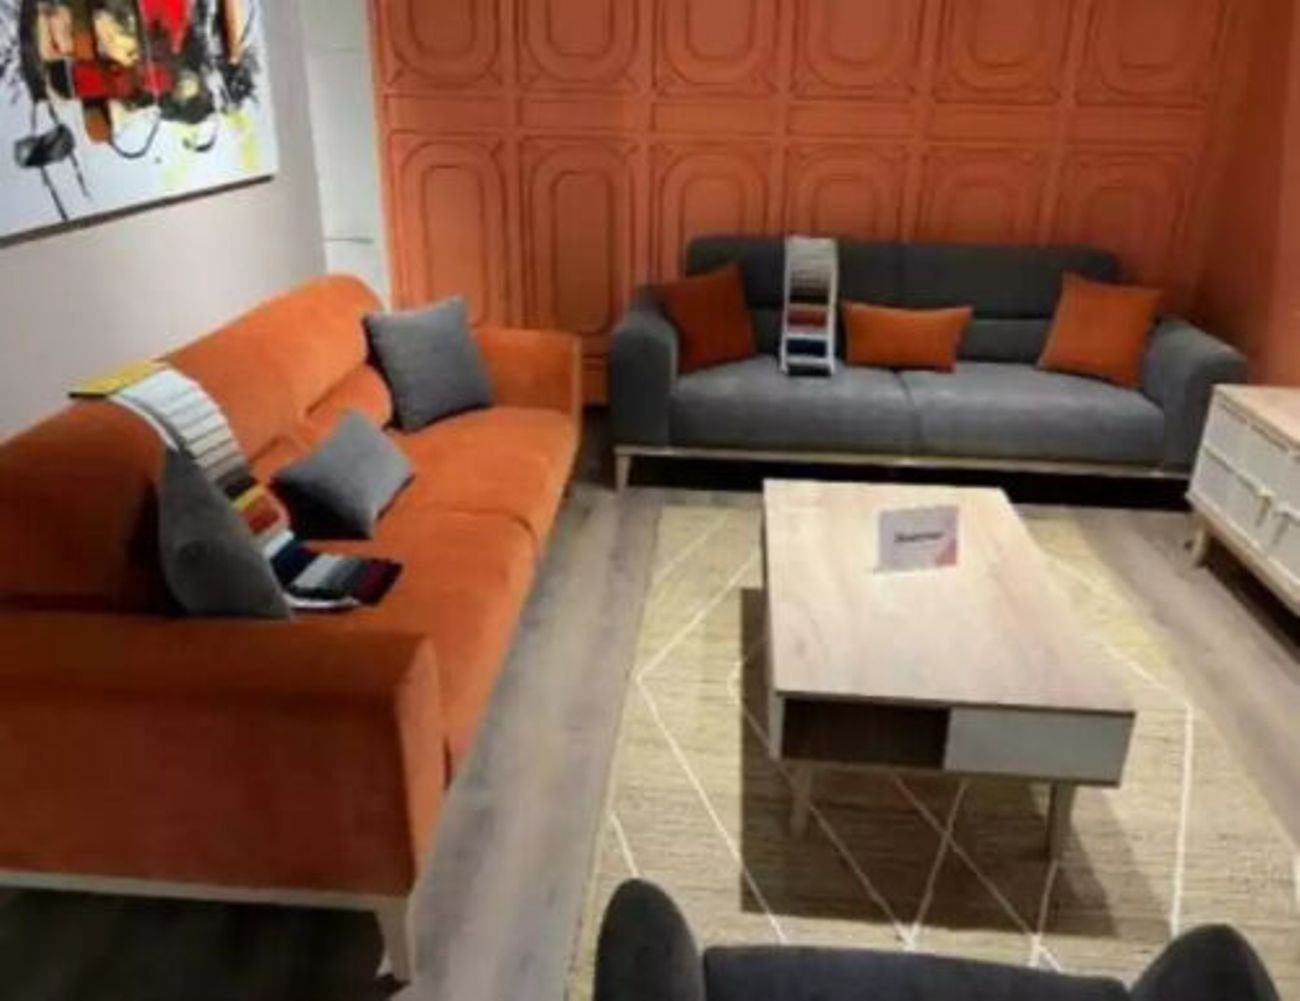 Italy Sitzer Dreisitzer 1 Couch Neu, Stoffsofa in Sofa Teile, Orange 3-Sitzer Klassisches Stoff JVmoebel Made 3